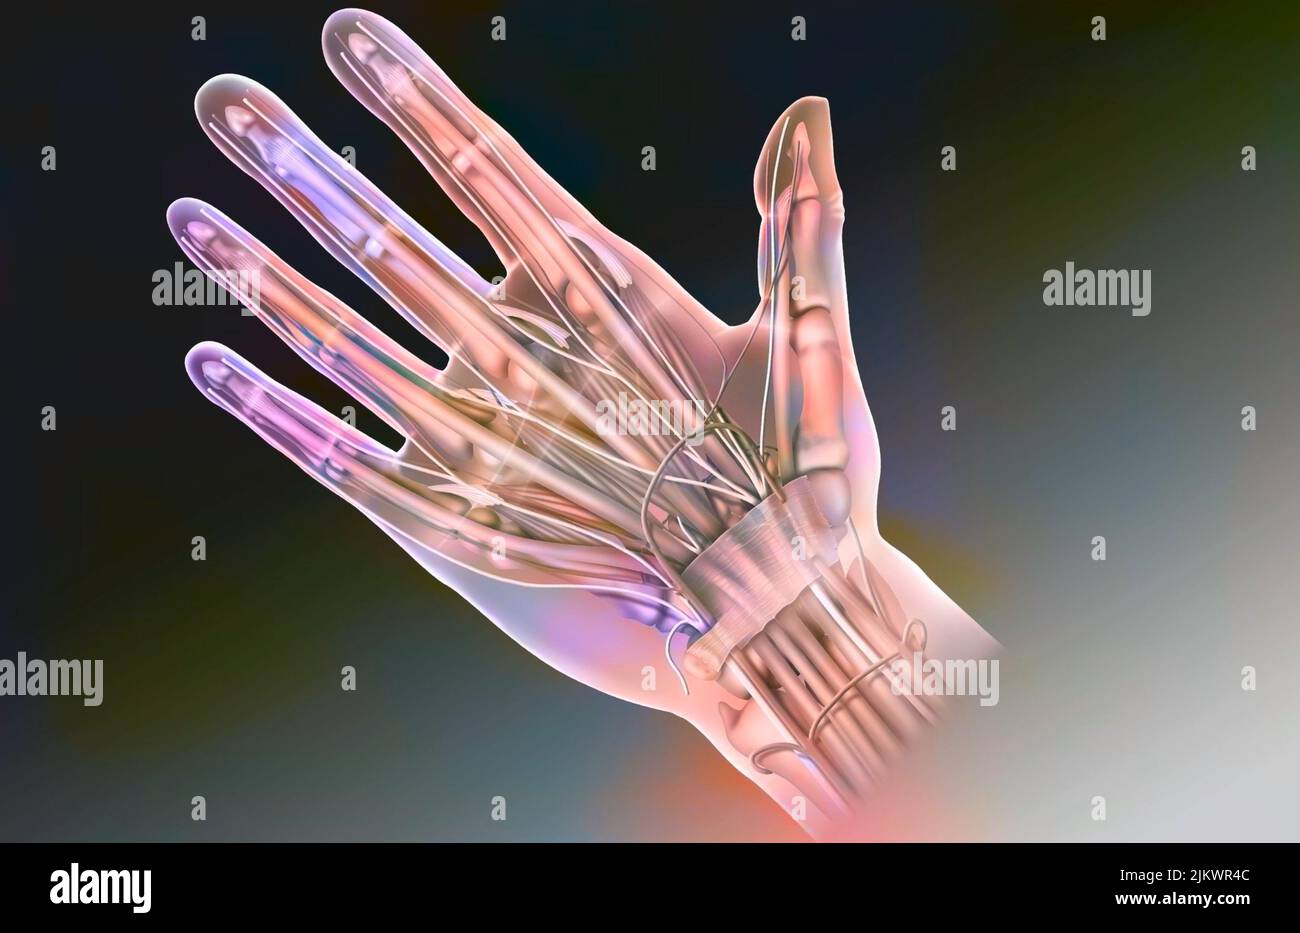 Anatomia del volto palmo della mano e del suo contenuto: Nervo mediano, tendini, arteria radiale. Foto Stock